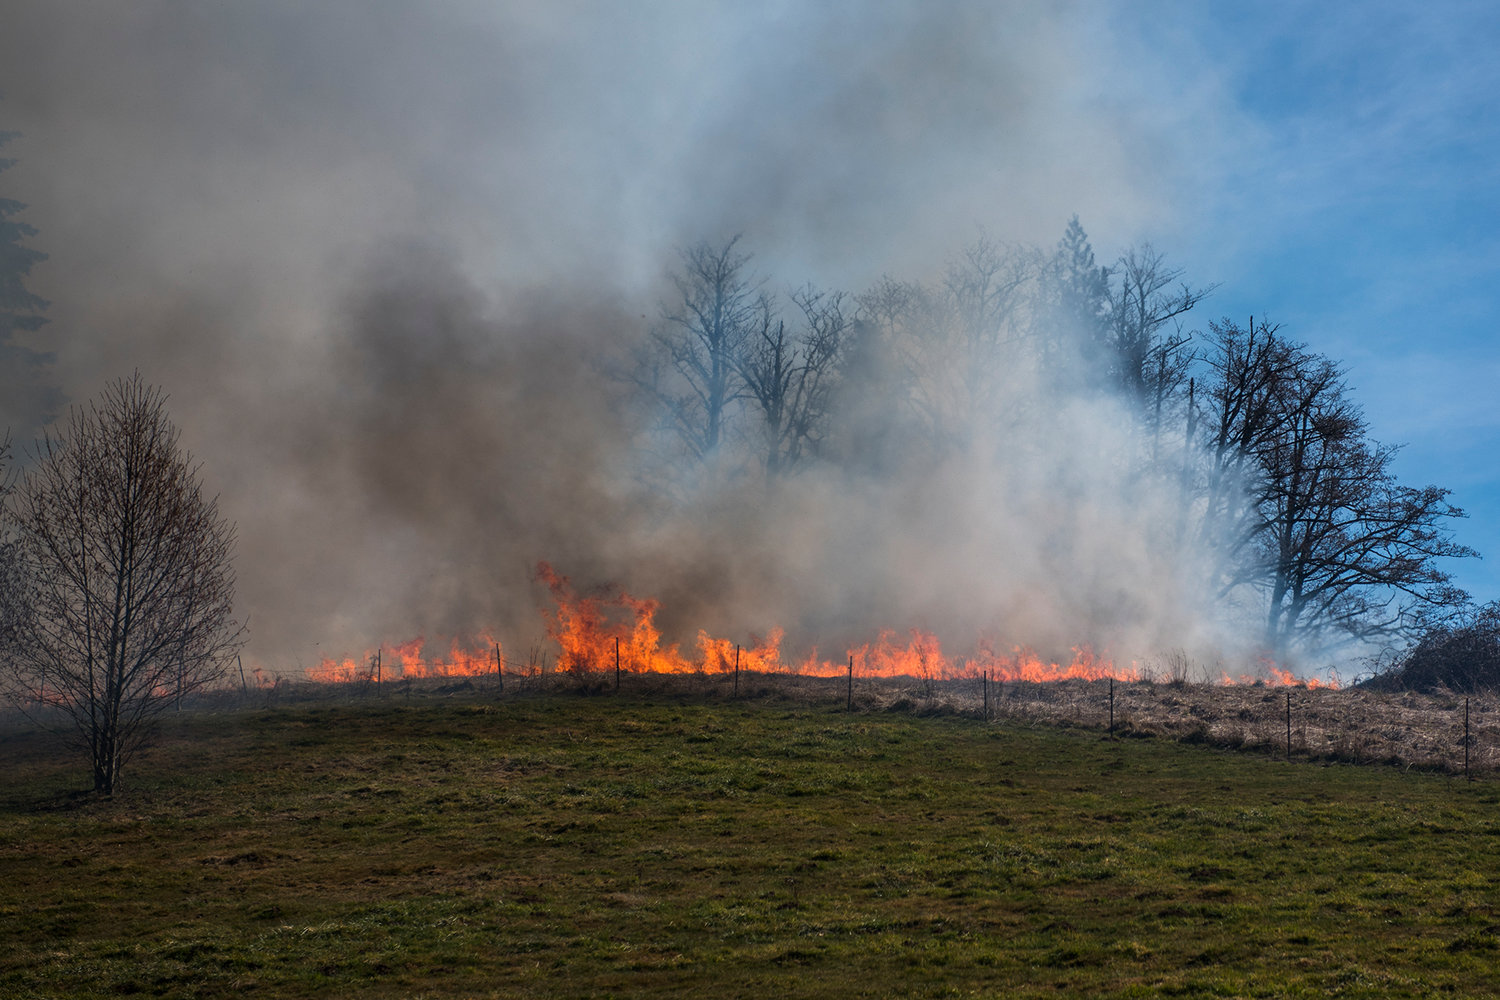 Fire sweeps across a field seen from Ajlune road in March in Mossyrock.